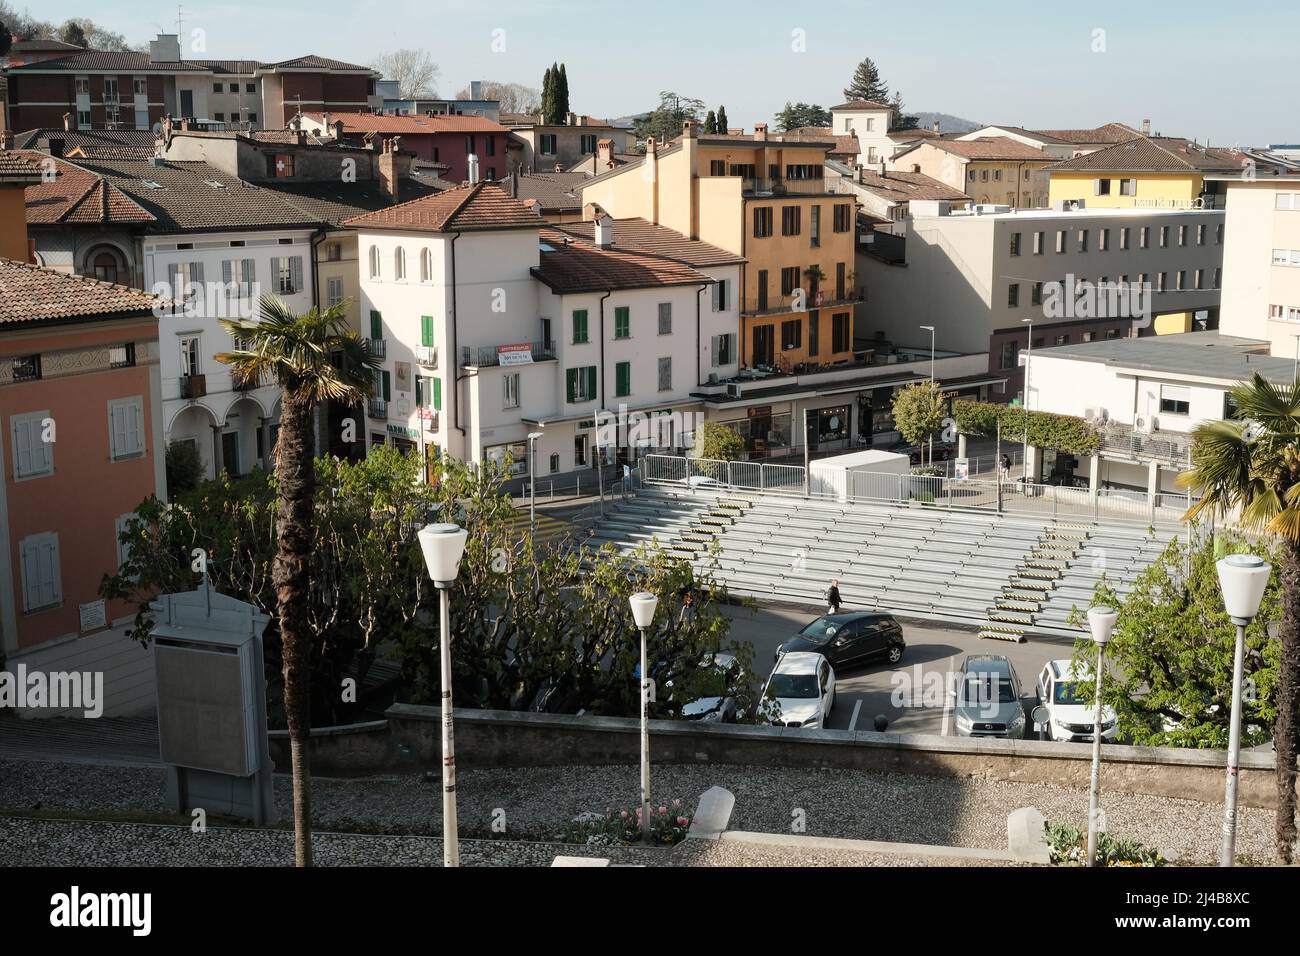 Cityscape of Mendrisio, Canton Ticino, Switzerland Stock Photo